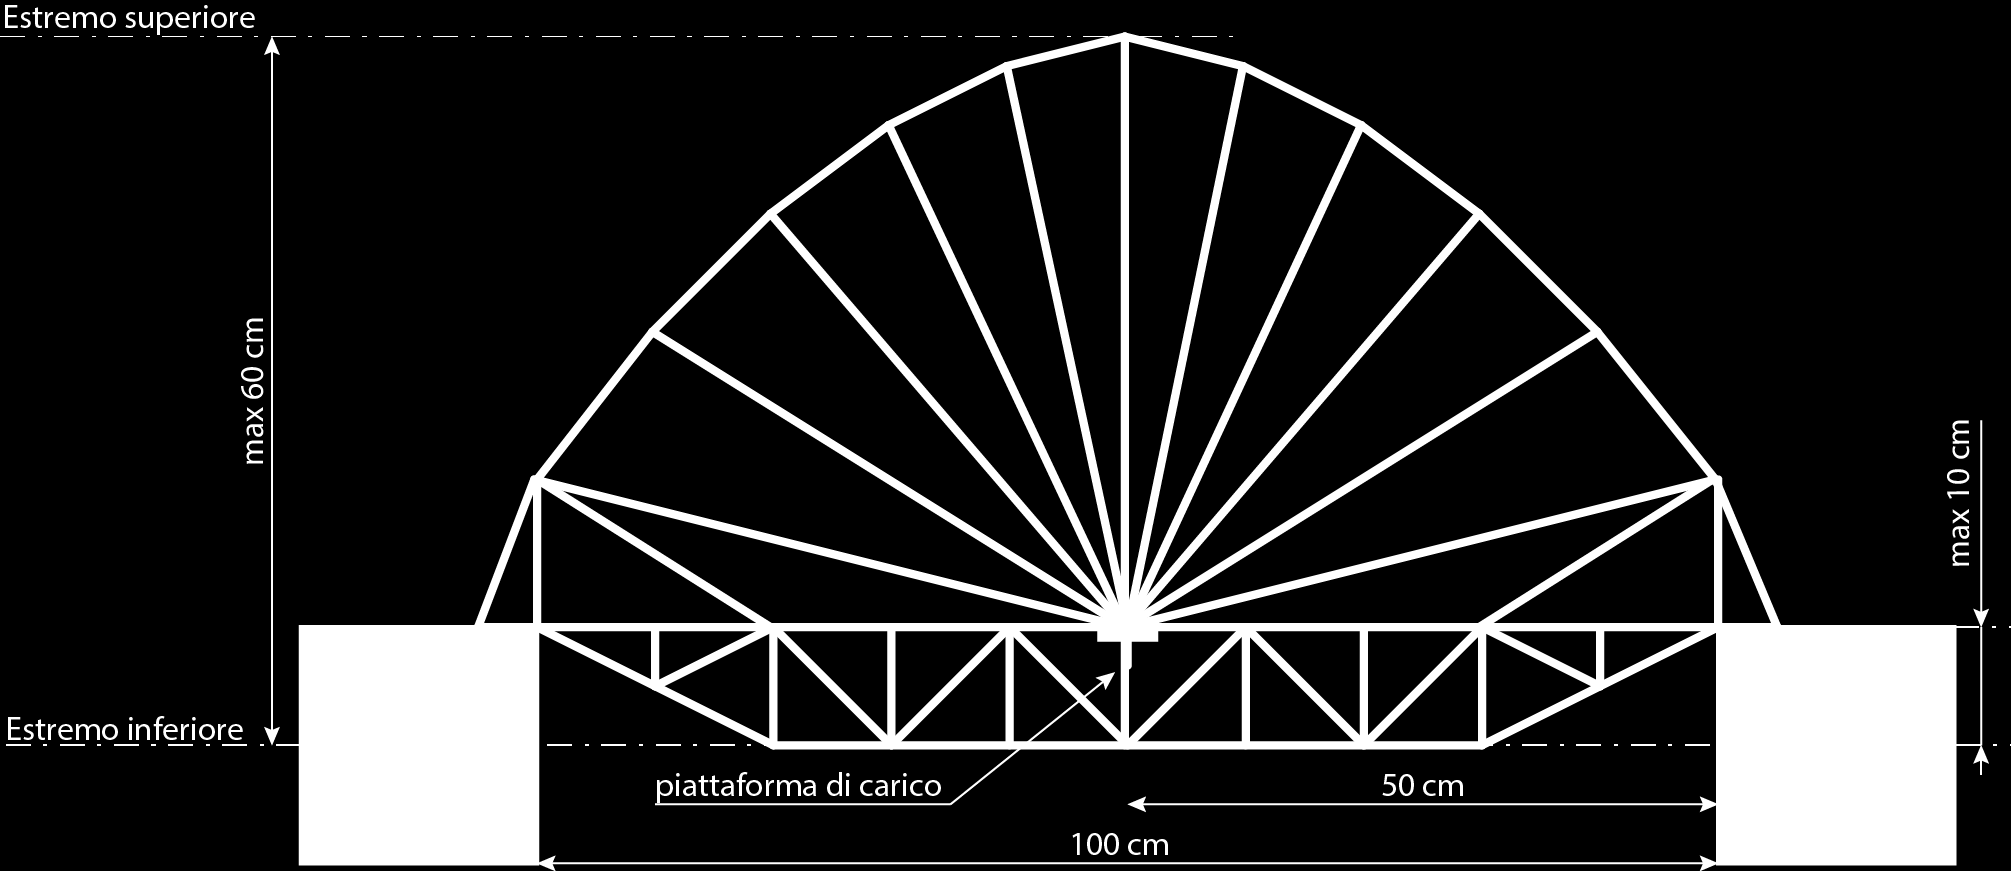 Regole costruttive - ponti ad arco o di fantasia Materiali Il ponte deve essere realizzato utilizzando preferibilmente spaghetti, bucatini, zitoni e lasagne.